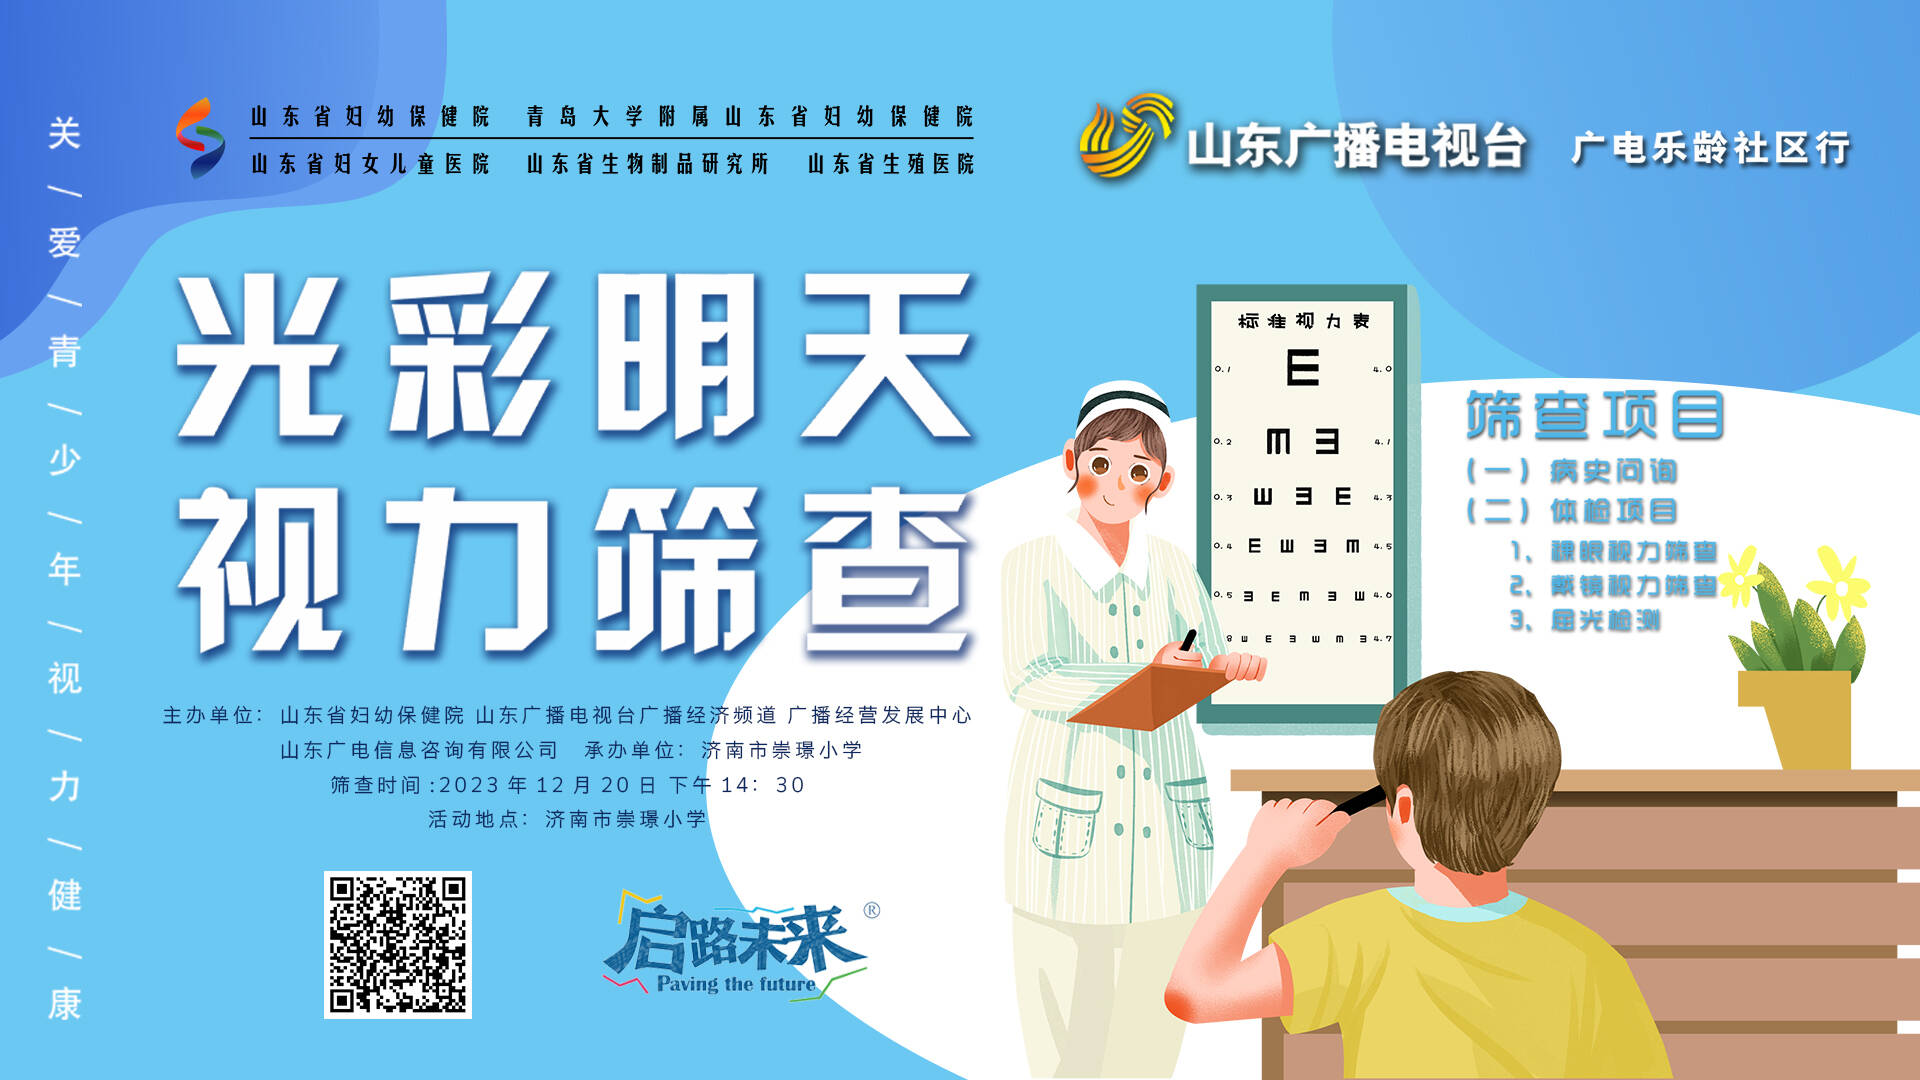 广电乐龄·光彩明天——大型校园视力筛查活动走进济南市崇璟小学